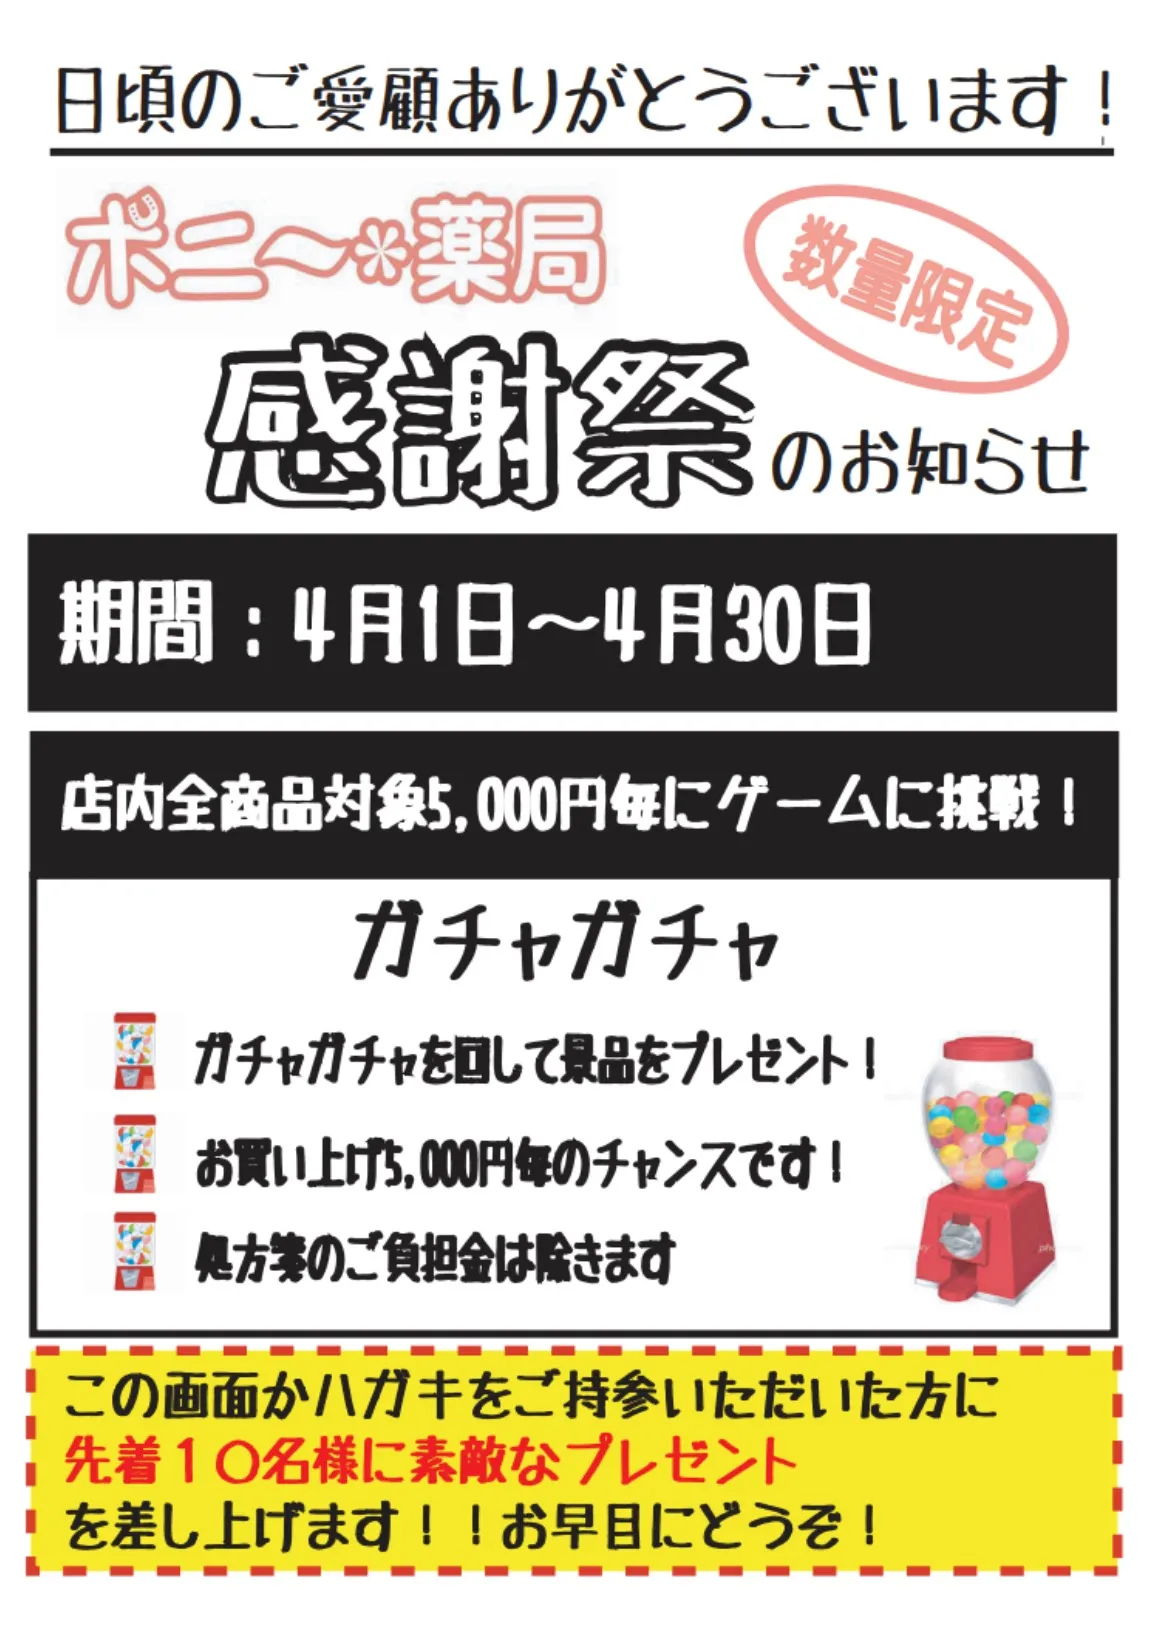 神戸市にある薬局のキャンペーンのお知らせです。